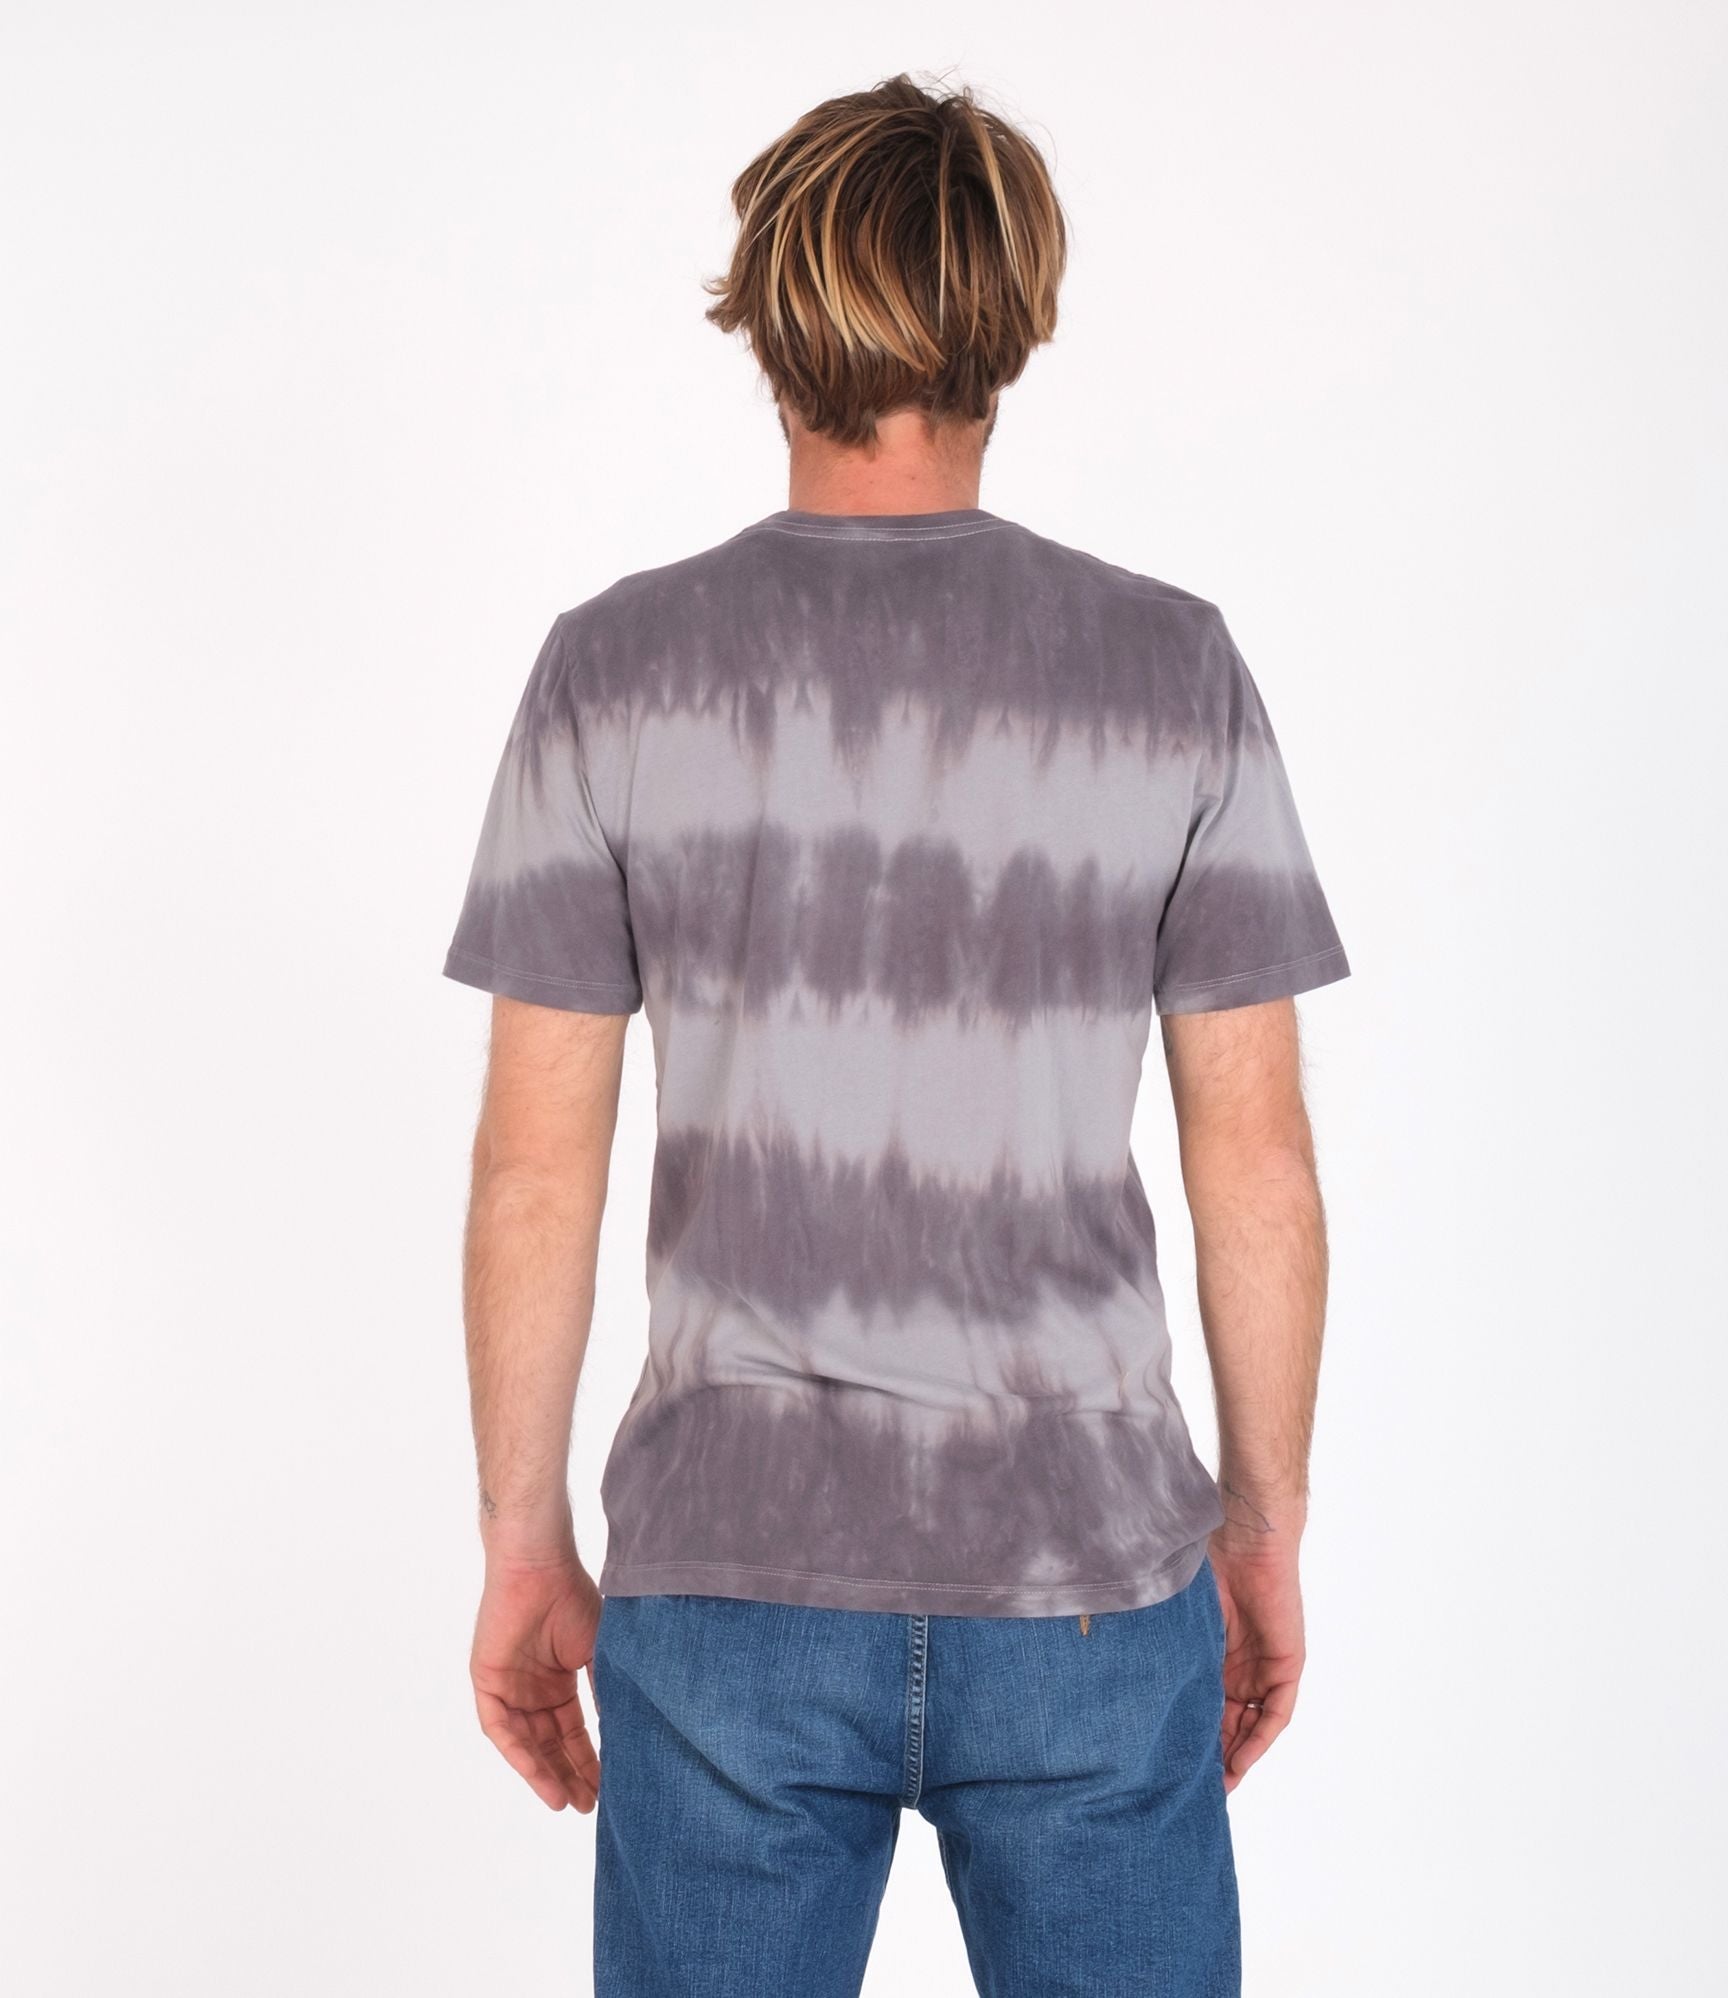 Camiseta Hurley Everyday washed Tie Dye Particly Grey | Camisetas de hombre | Camisetas manga corta de hombre | LO MÁS NUEVO | surfdevils.com